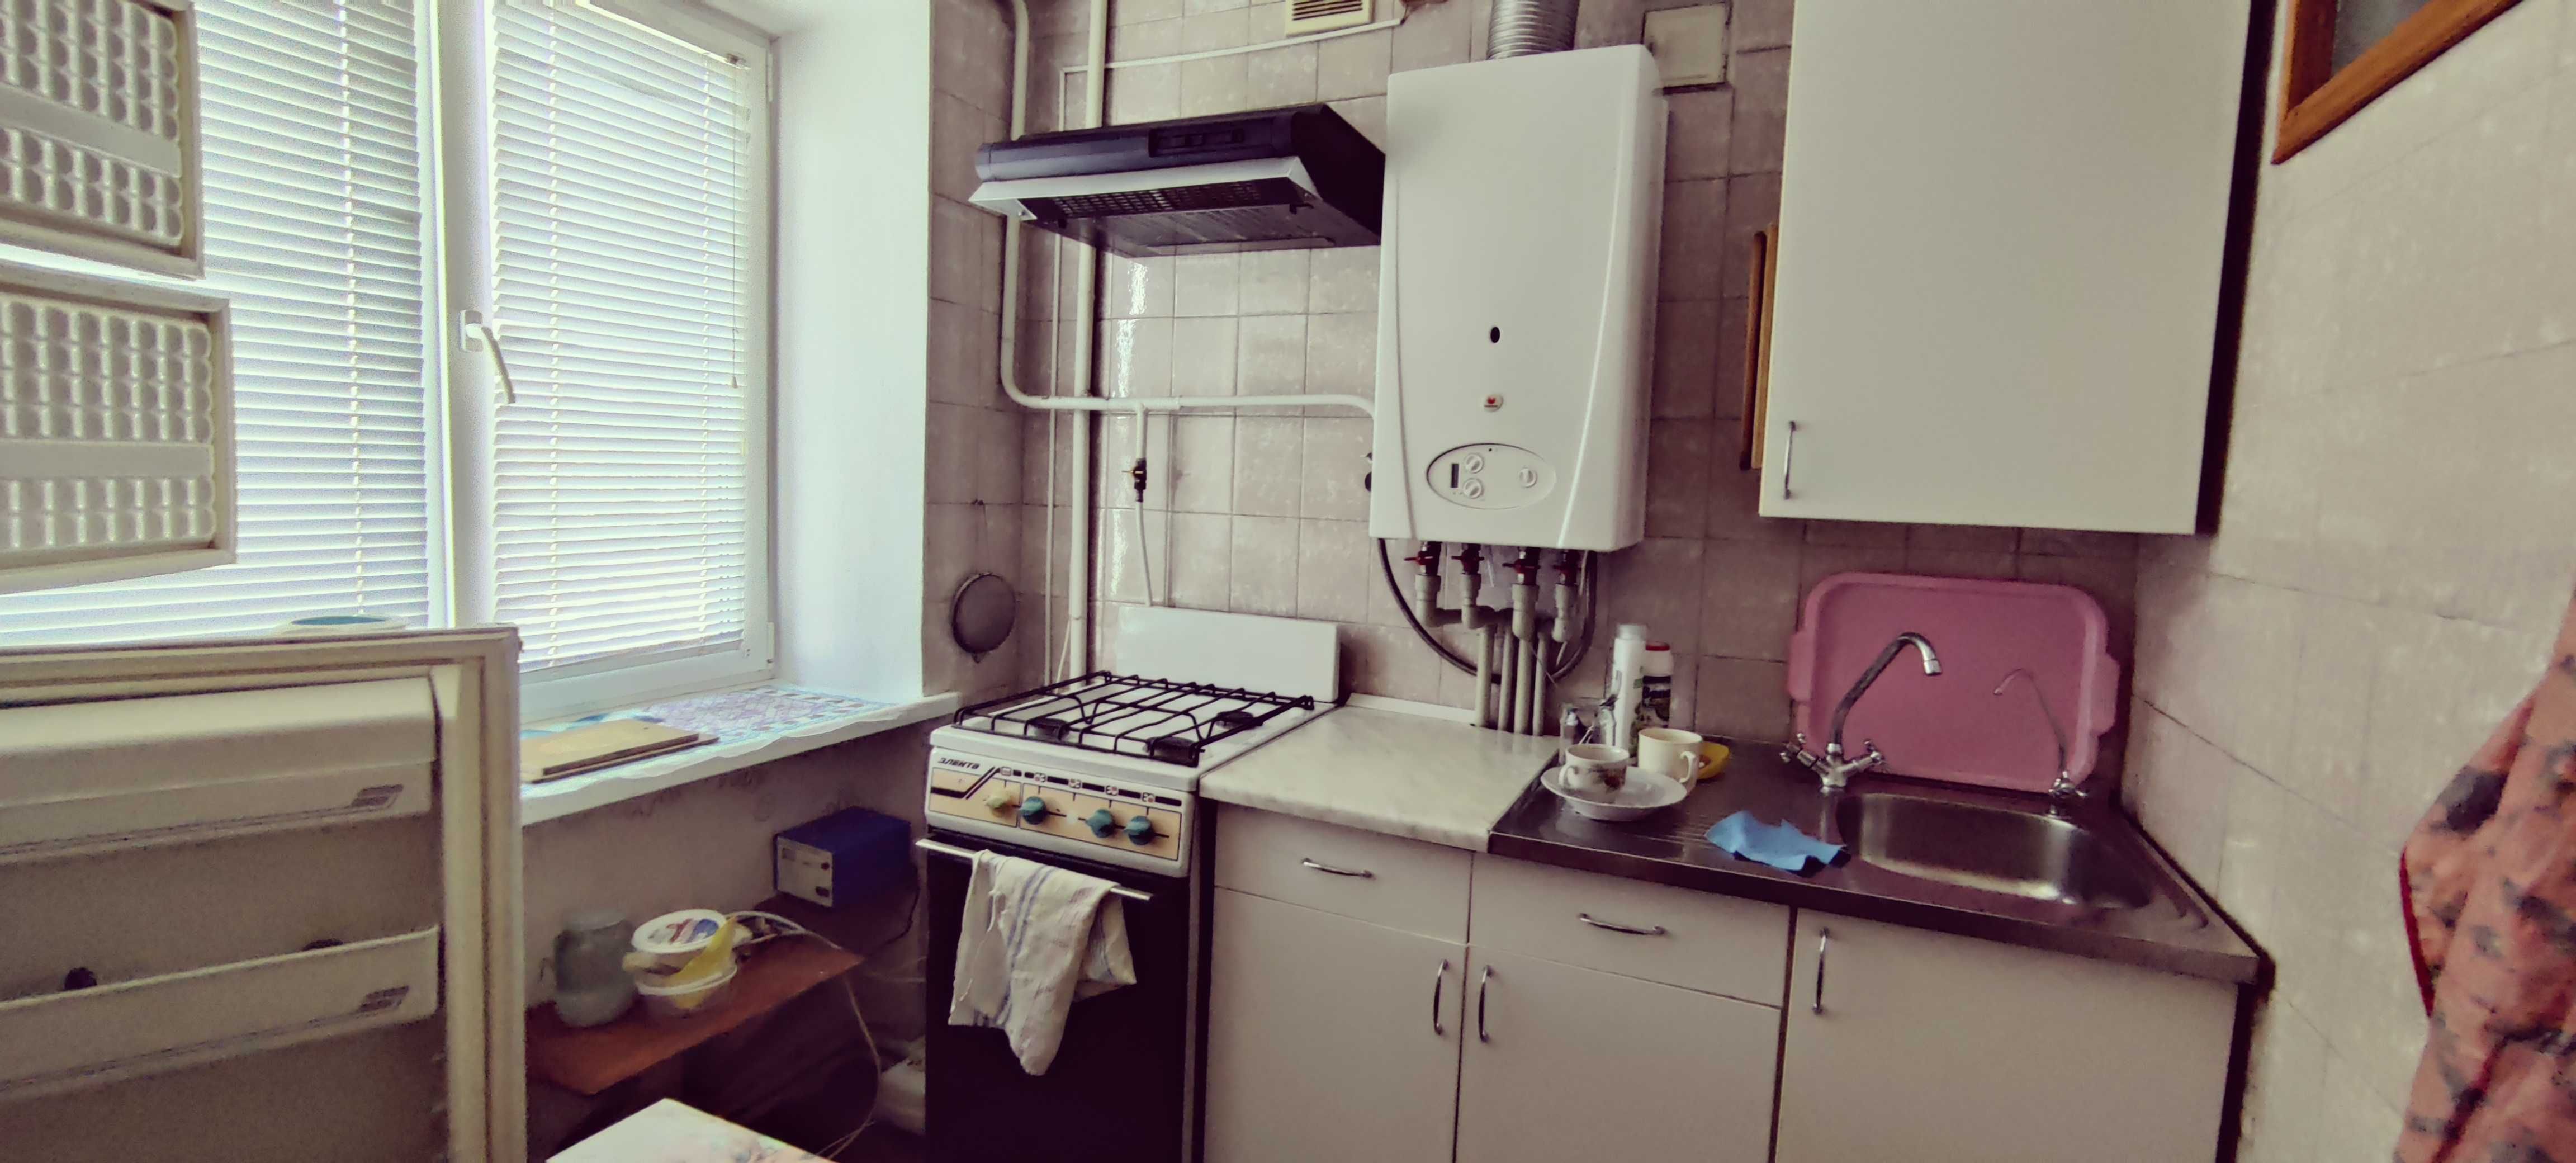 Продается 2-х комнатная квартира ул. Чайковского с авт.отоплением